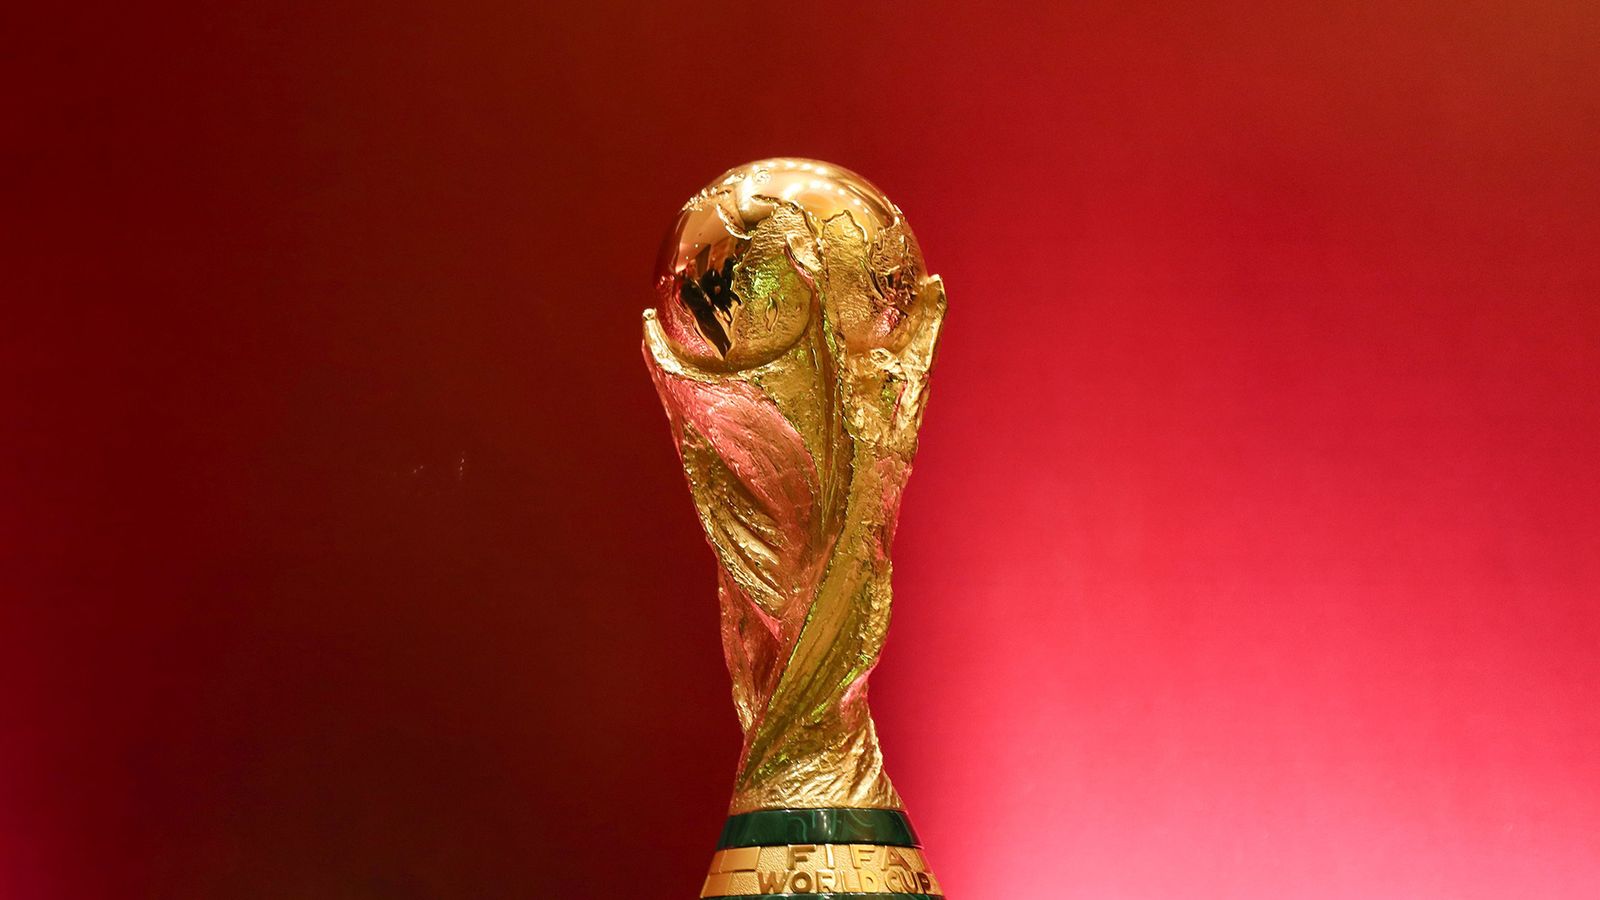 Qatar 2022 Football World Cup Logo Revealed 